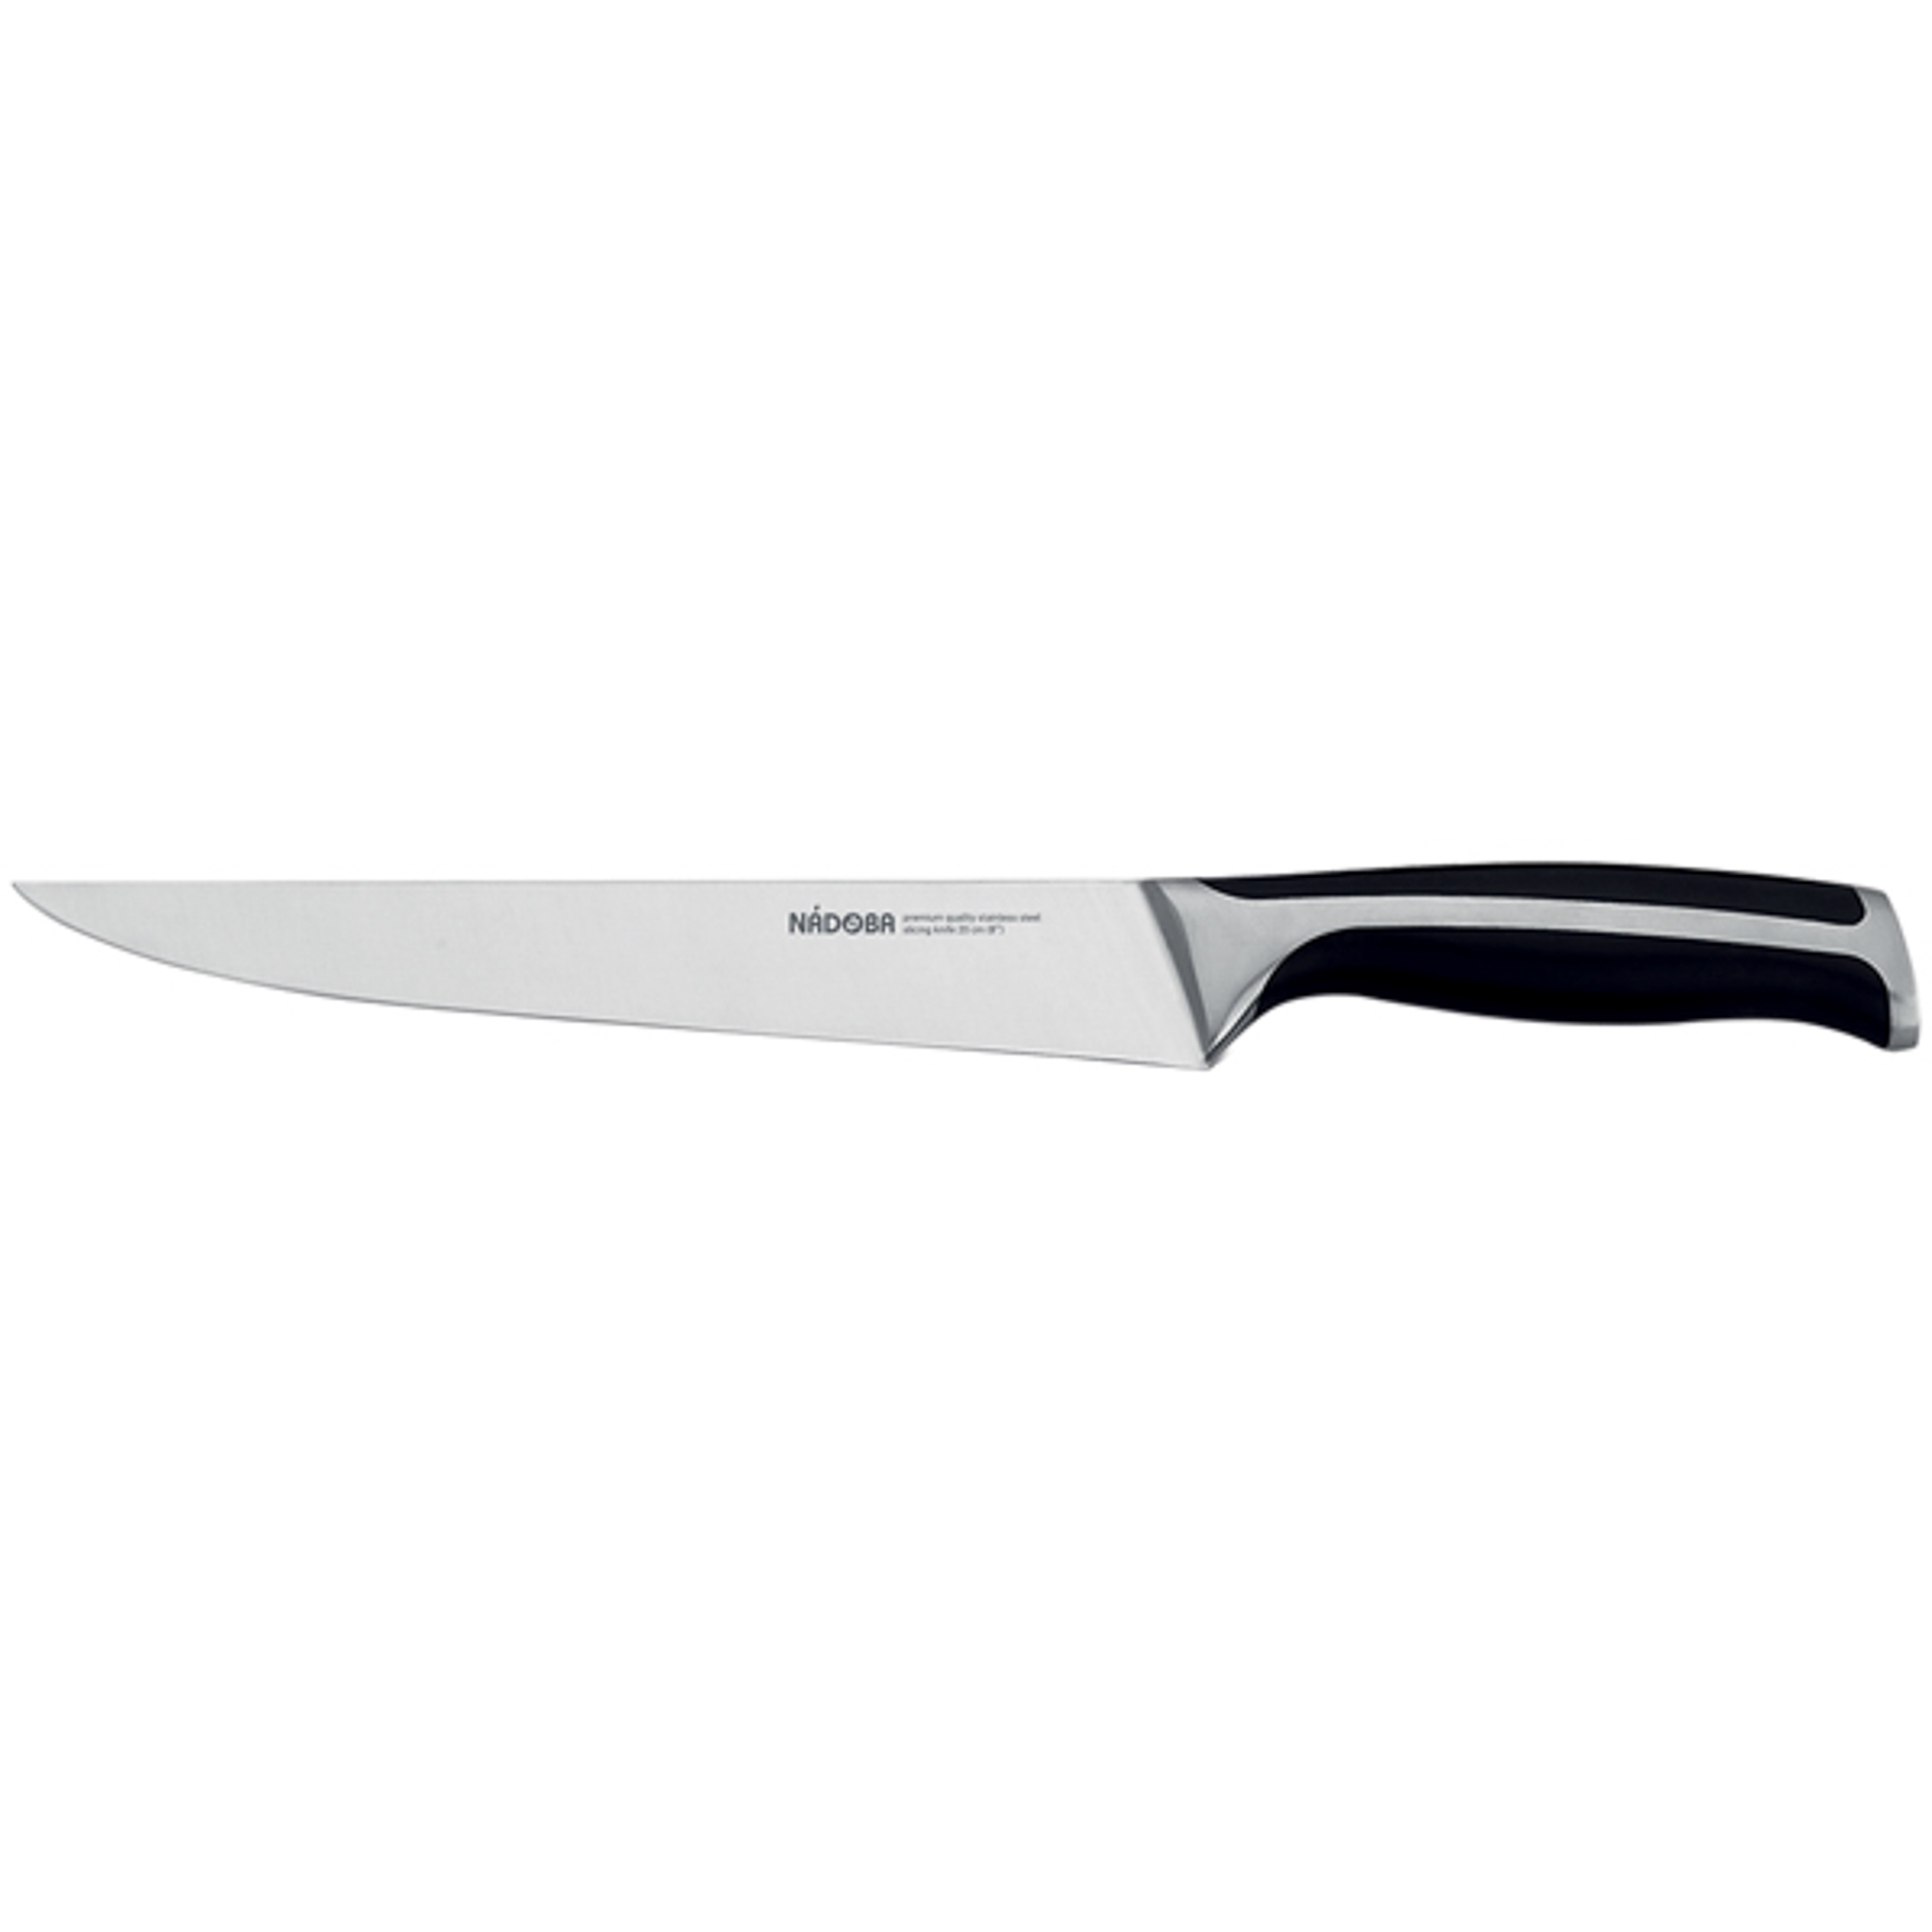 Нож разделочный 20 см Nadoba ursa нож разделочный skk traditional 19 см коробка